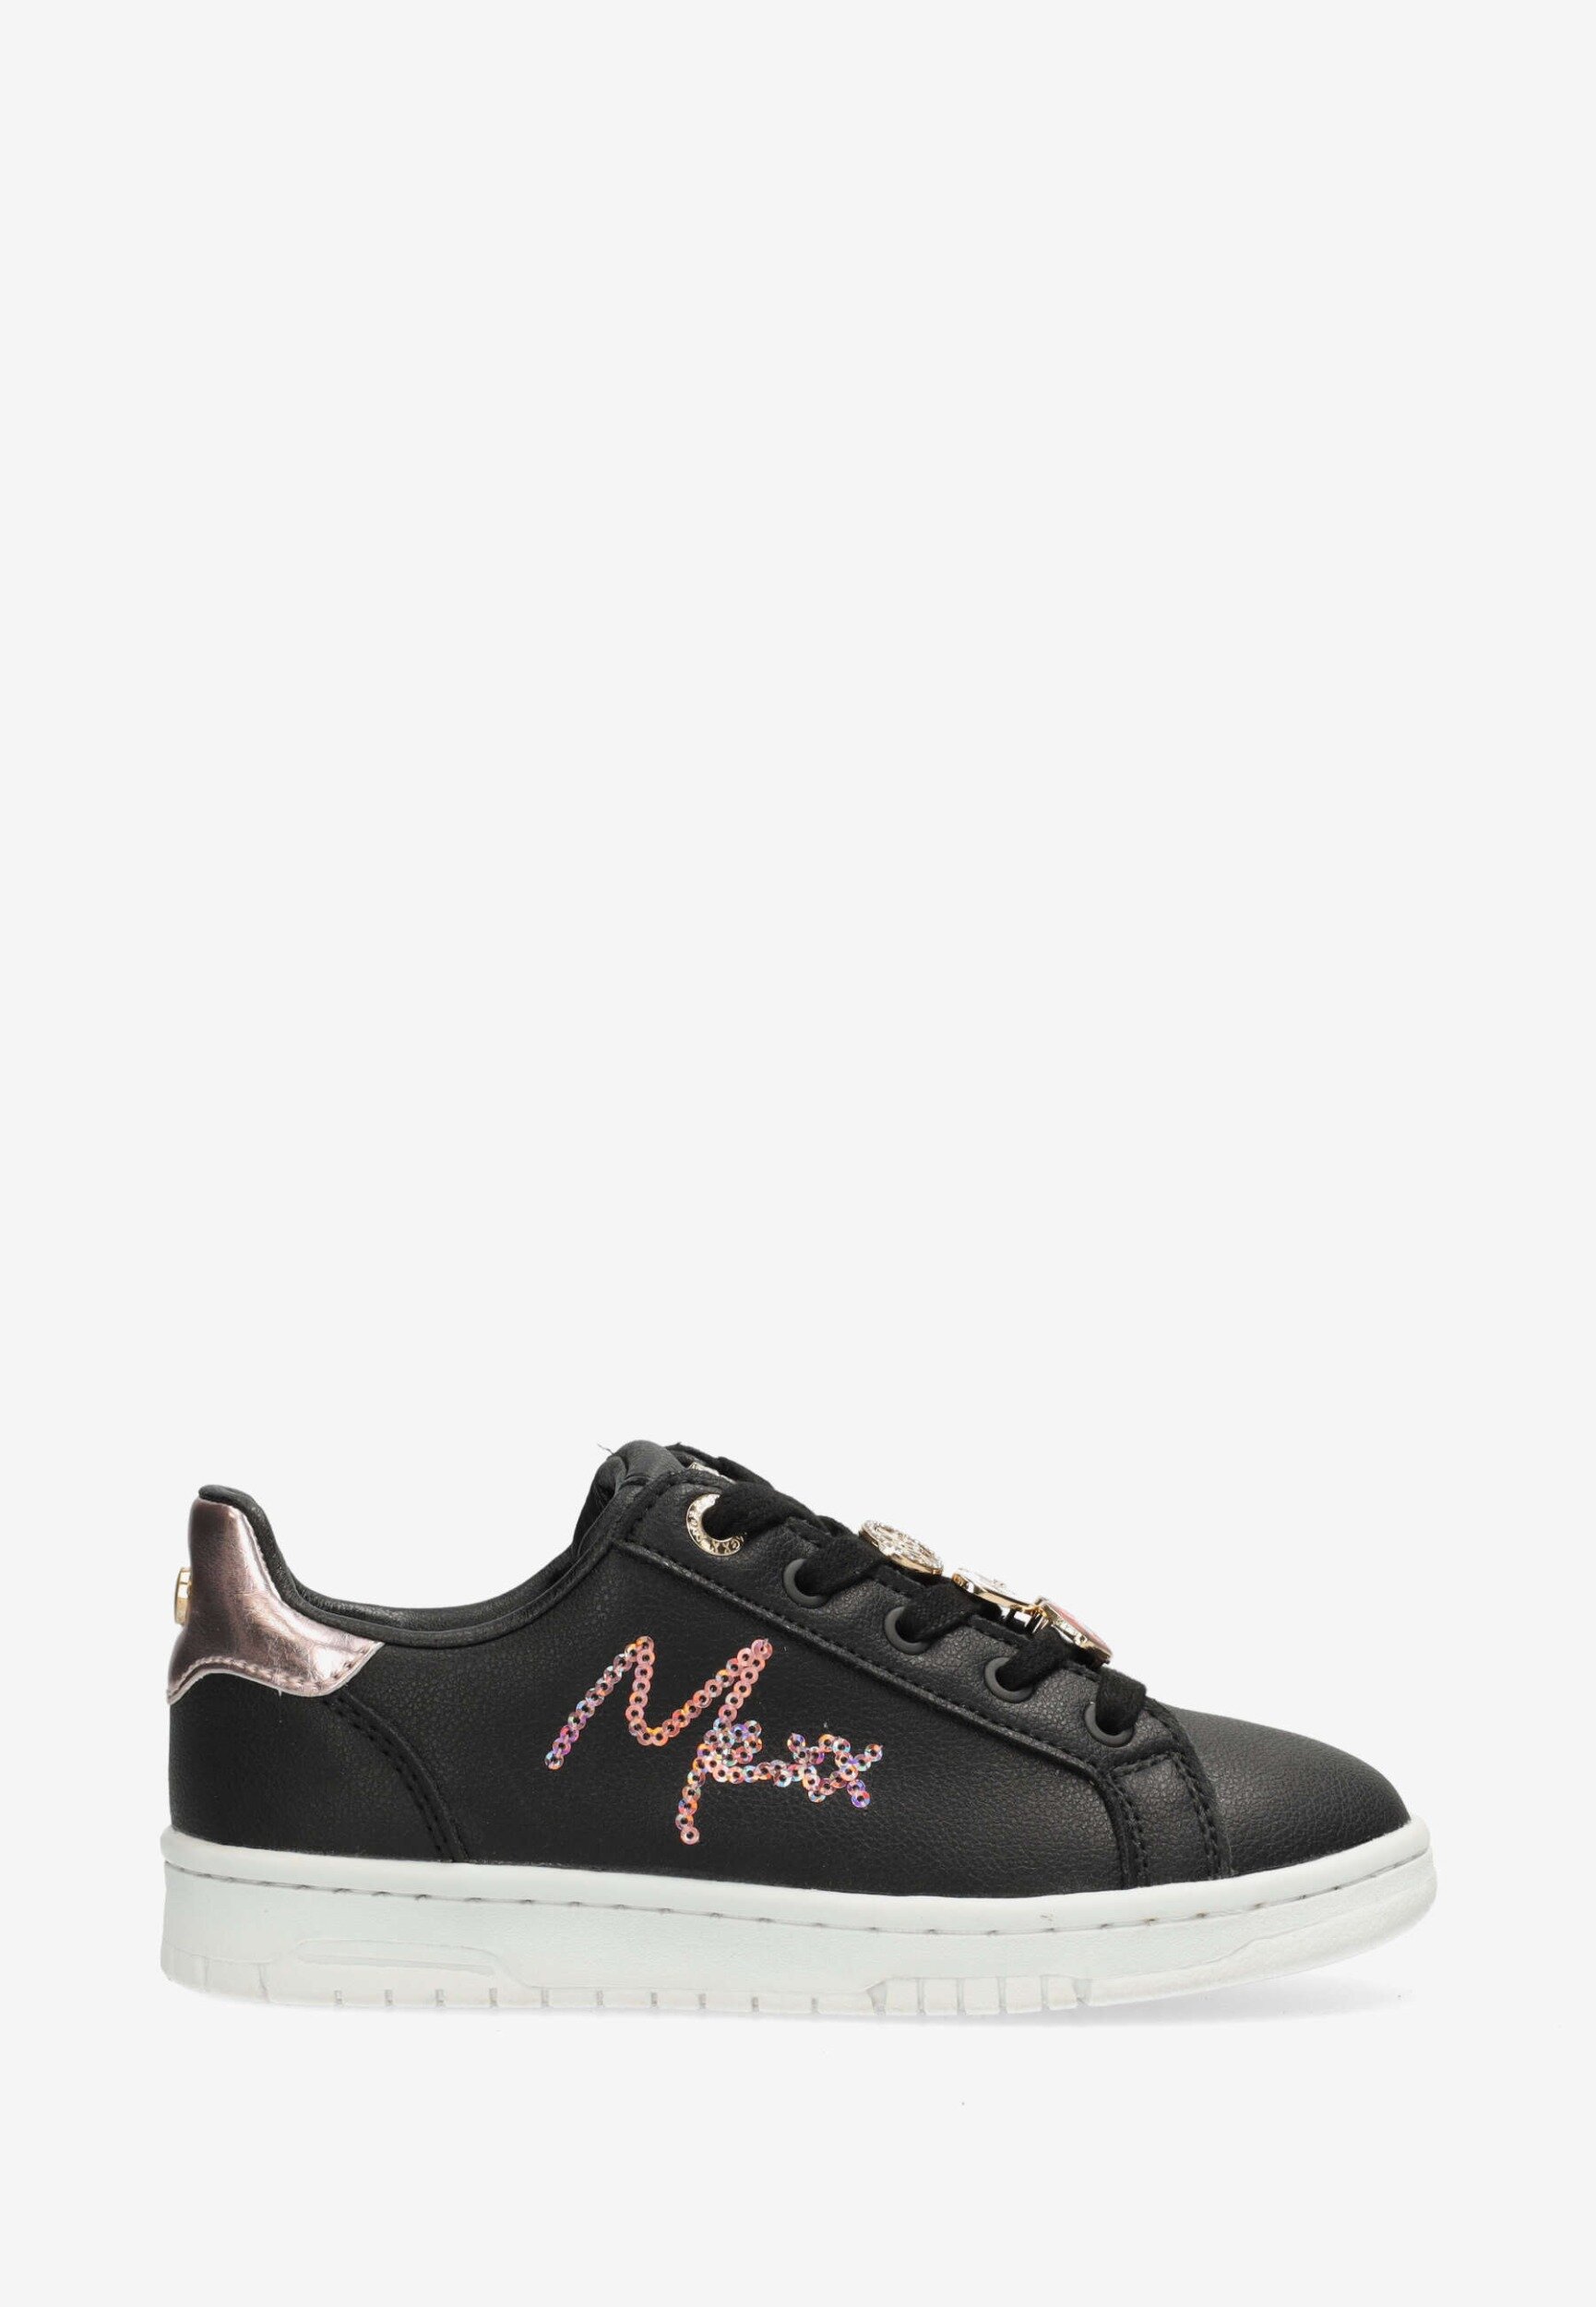 Sneaker Hoppa zwart/roze